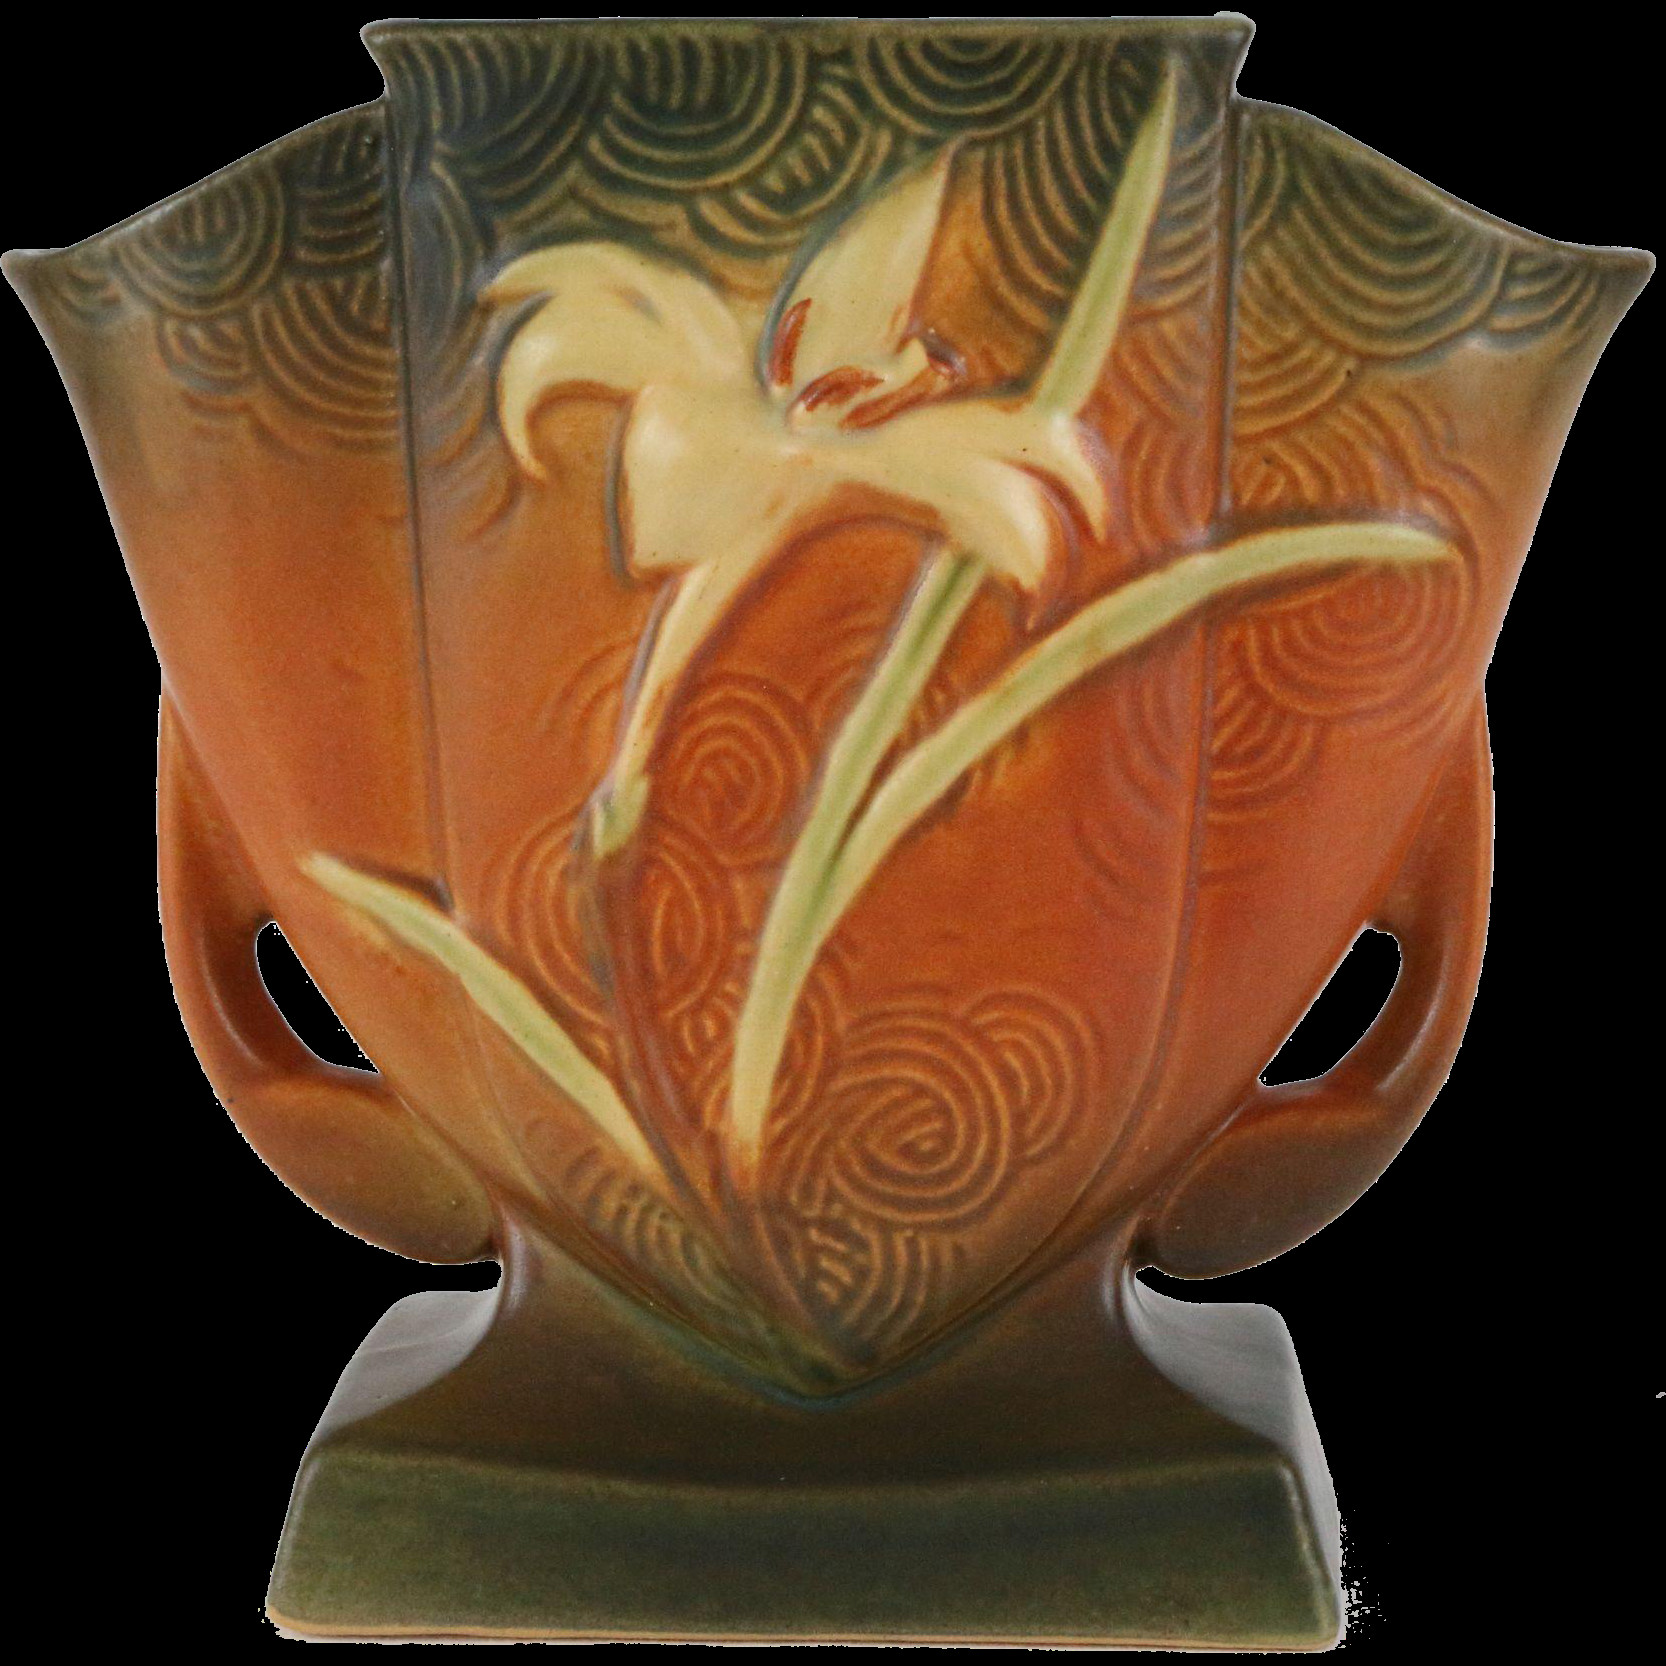 22 Unique Tall Silver Urn Vase 2024 free download tall silver urn vase of roseville zephyr lily 7 fan vase 206 7 roseville decorative with regard to roseville zephyr lily 7 fan vase 206 7